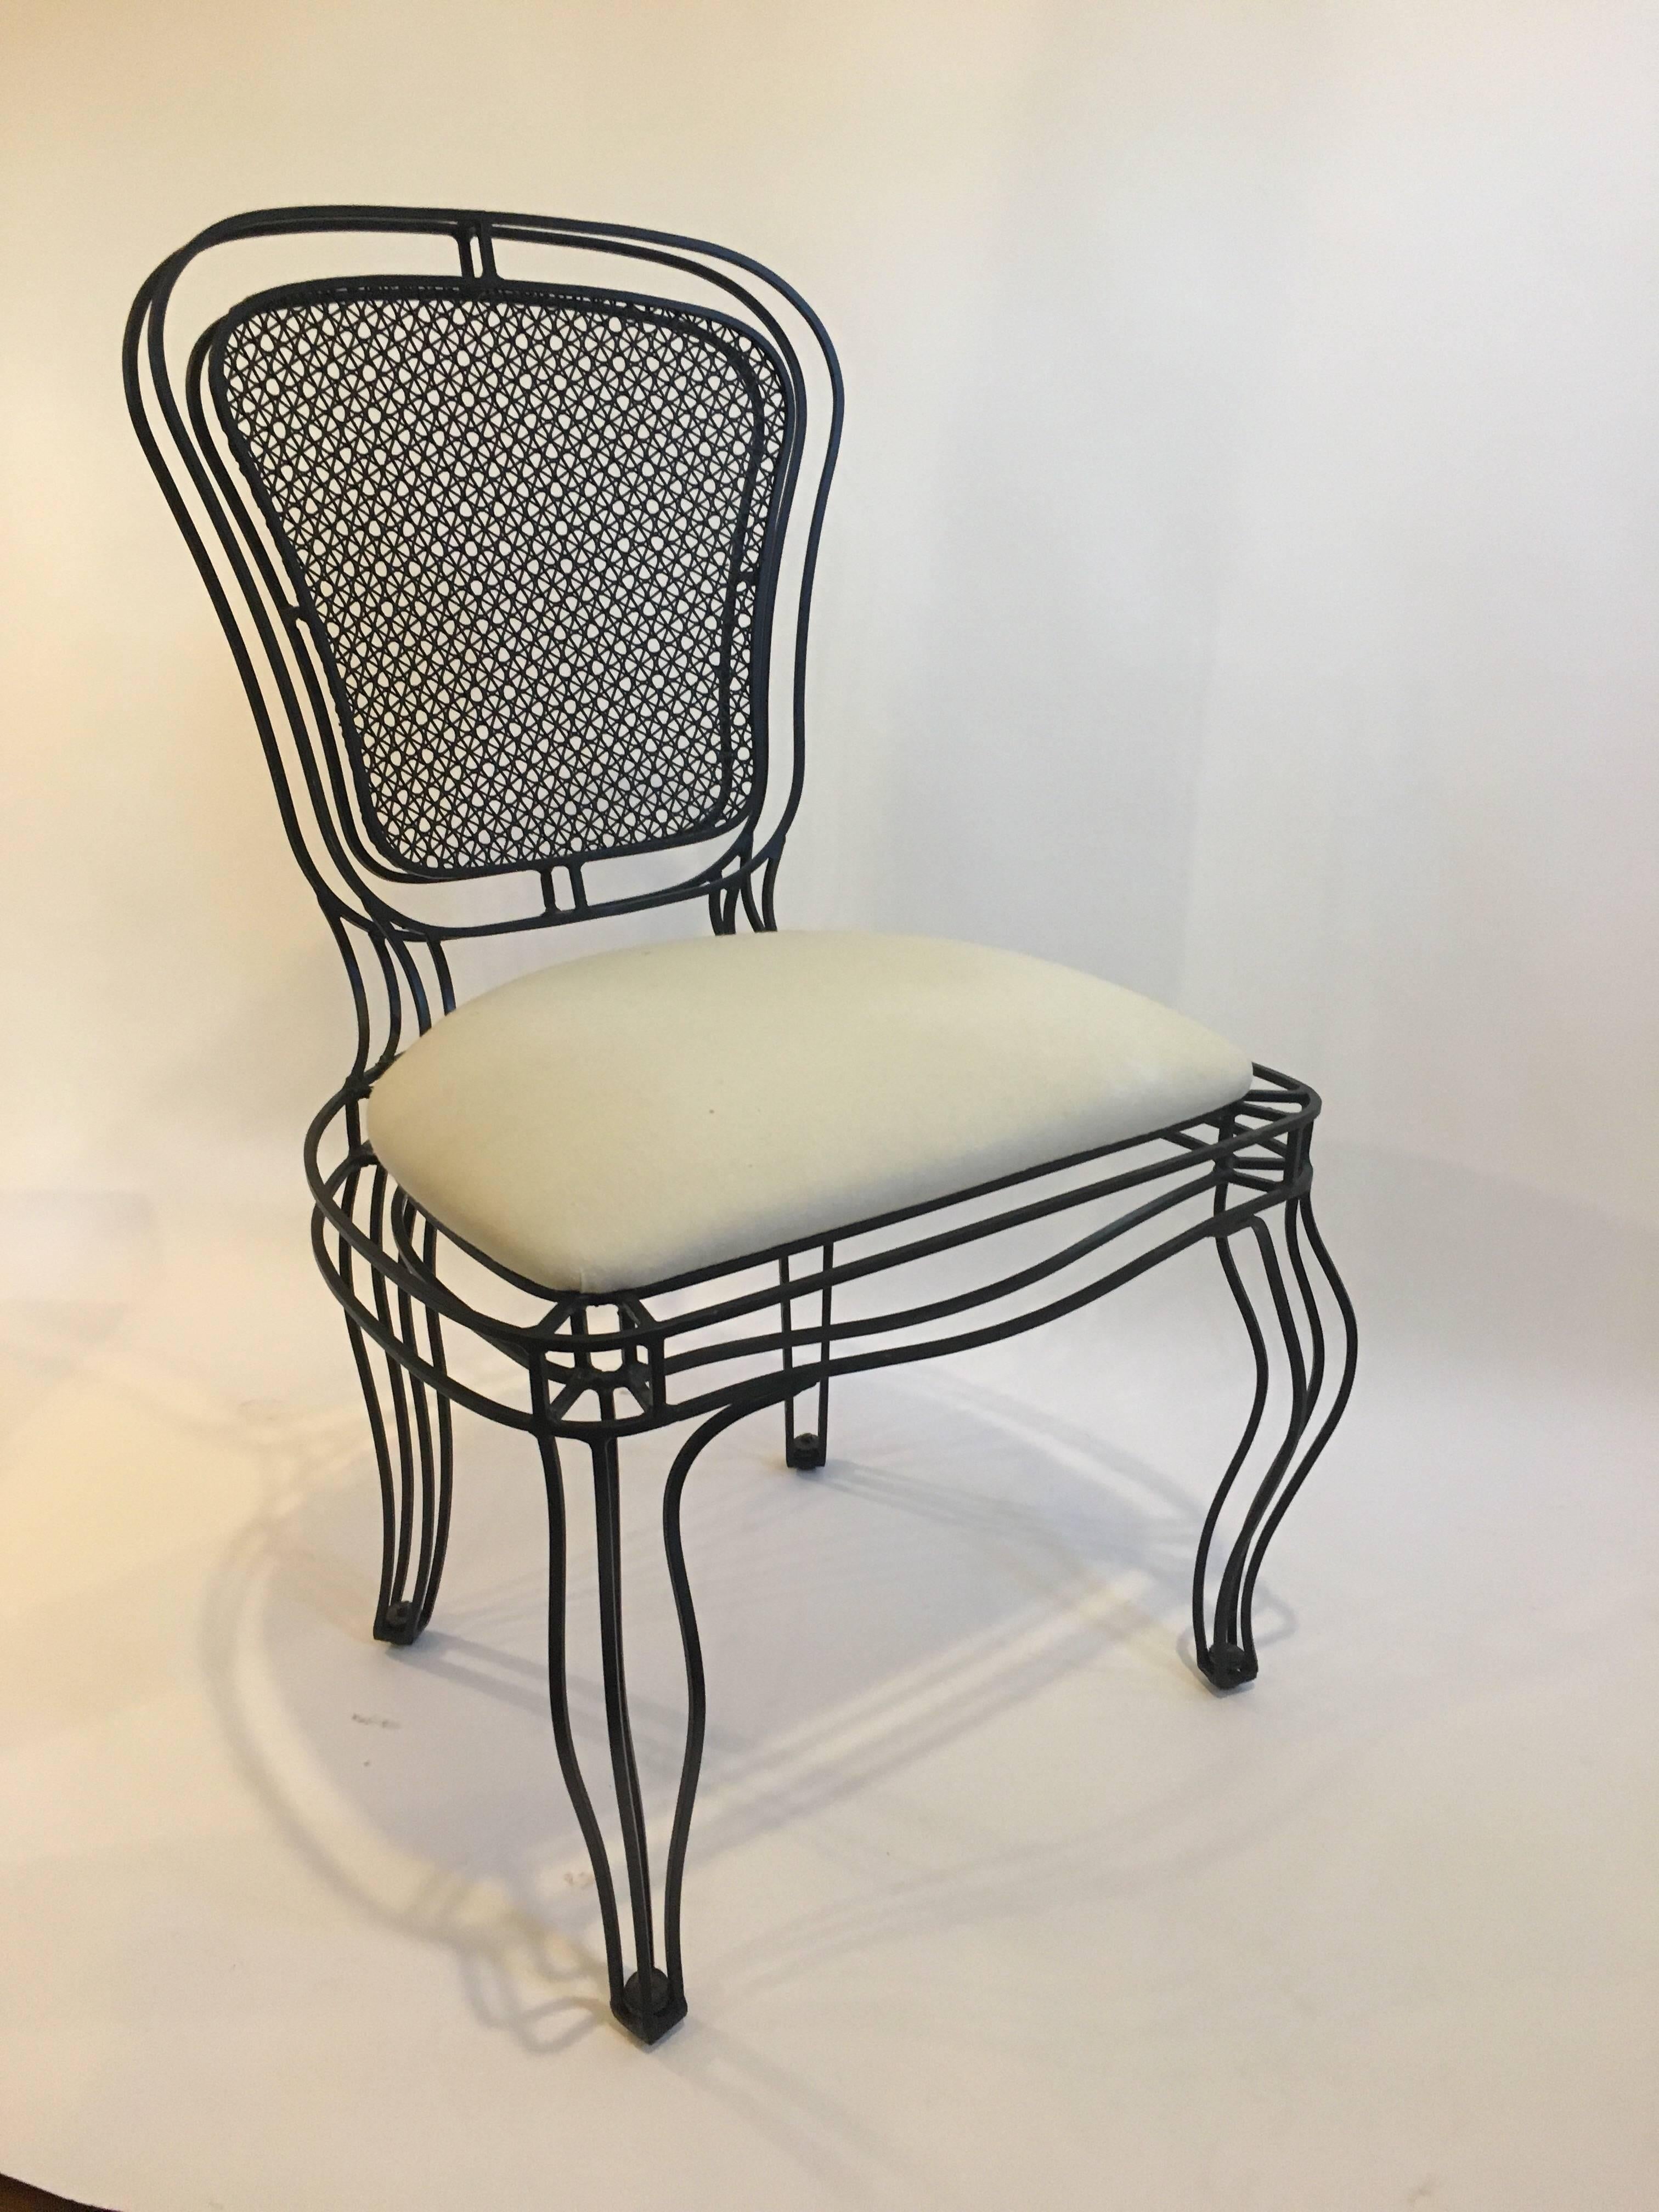 Chaises Manchez en fer noir Casamidy recouvertes de tissu mousseline. Ces chaises peuvent être utilisées à l'intérieur ou à l'extérieur avec le tissu d'extérieur approprié. Ces chaises modernes, épurées, de style français, sont solides mais